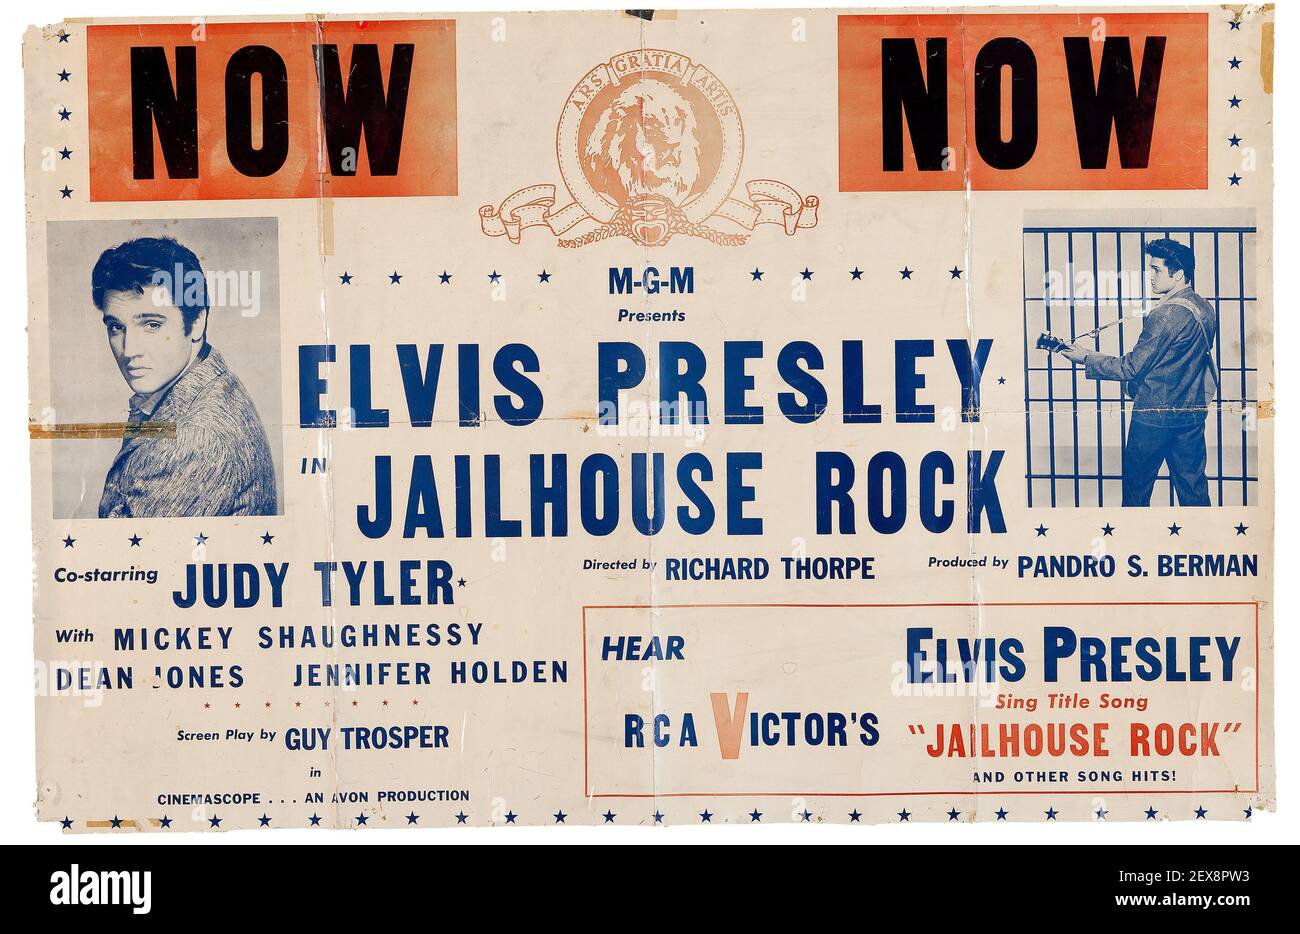 MAINTENANT ! Elvis Presley, Jailhouse Rock. Publicité. Banque D'Images